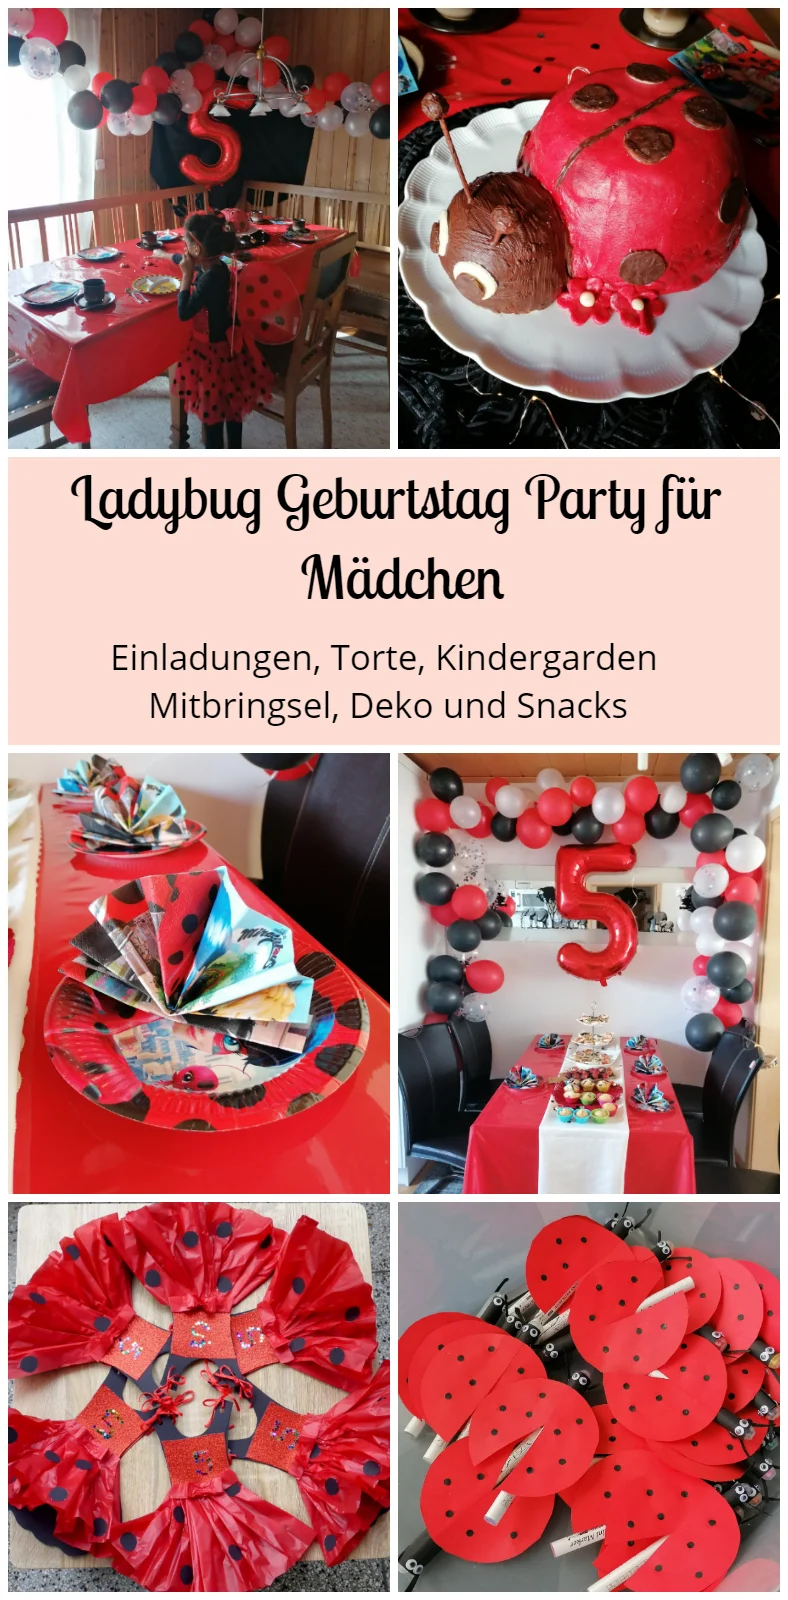 Ladybug Geburtstagsparty für Mädchen Organisieren Schritt für Schritt Anleitung: Einladungen, Torte, Kindergarden Mitbringsel, Deko und Snacks.